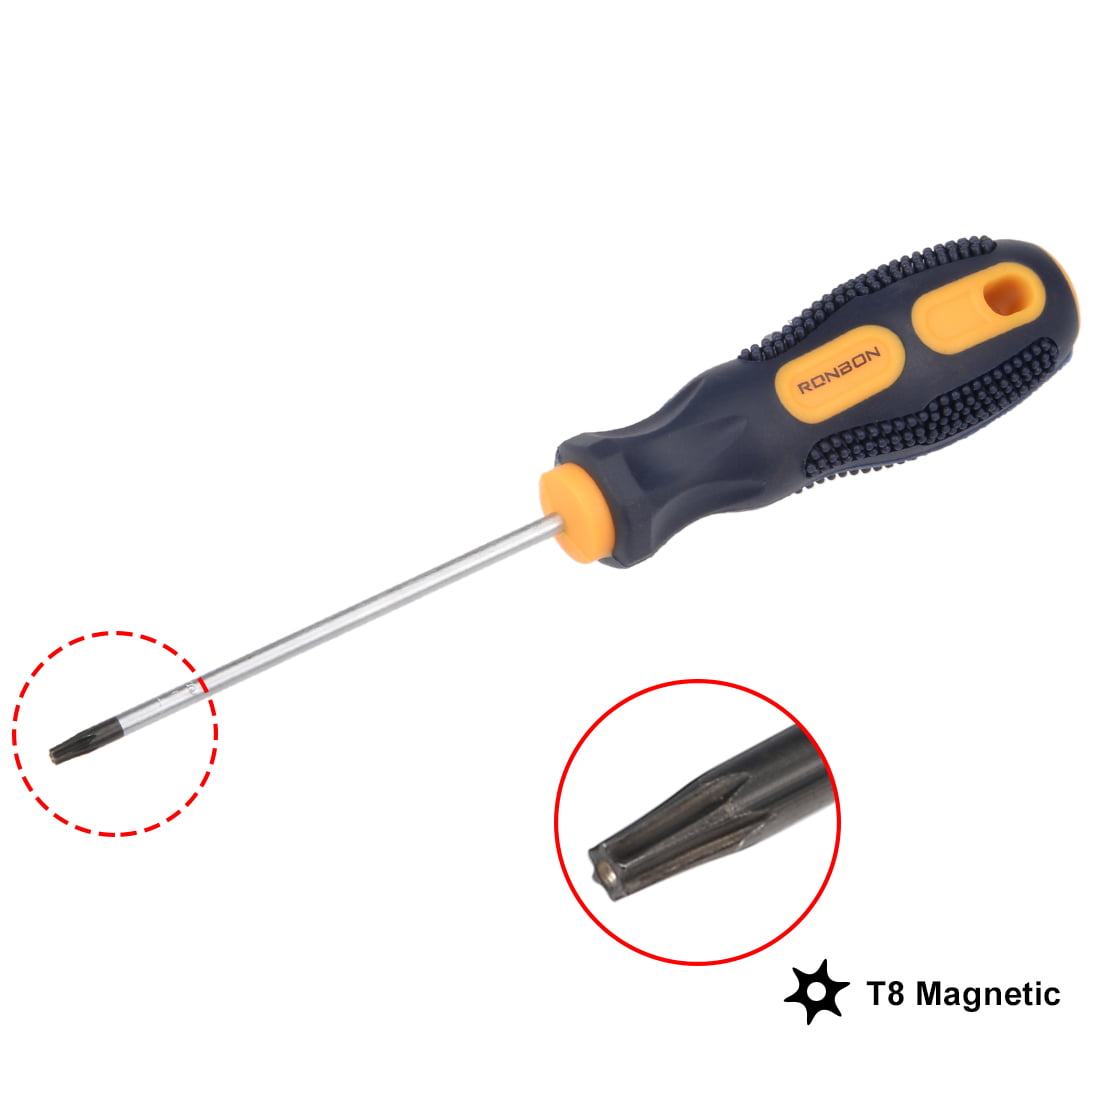 safety torx screwdriver